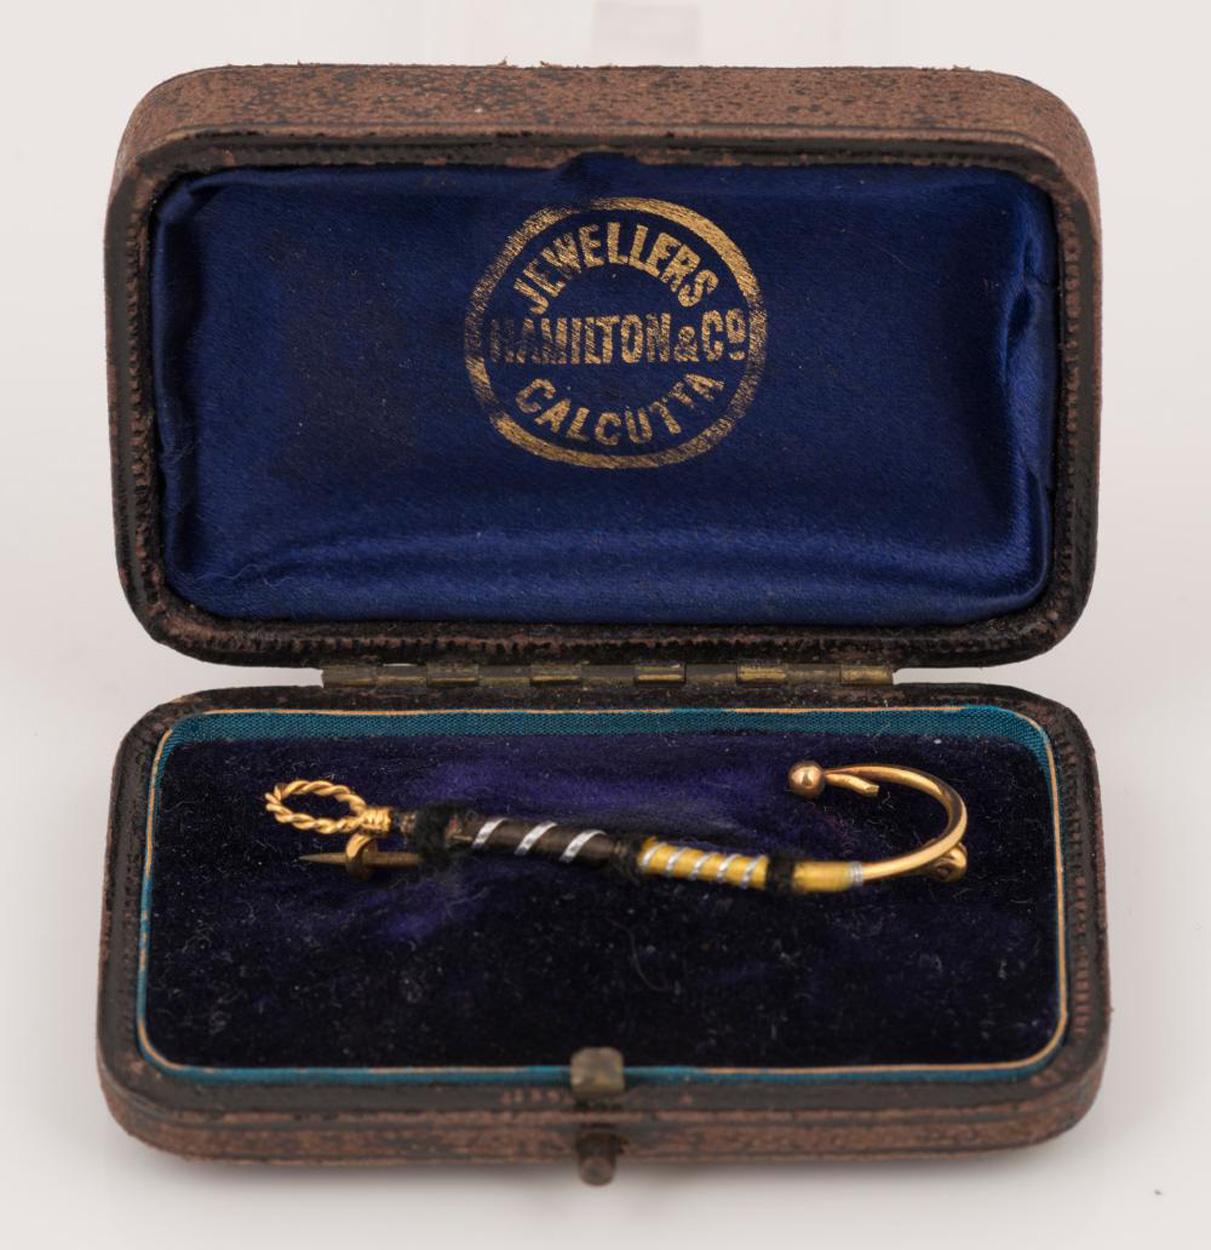 Raro y deseable broche de oro de 9 ct con forma de señuelo de pescador con mosca atado, vendido por Hamilton & Co, Calcutta,  1.7 gramos.

Robert Hamilton (1772-1848) llegó a la India y empezó a trabajar en Calcuta en 1808. En 1808 abrió su joyería